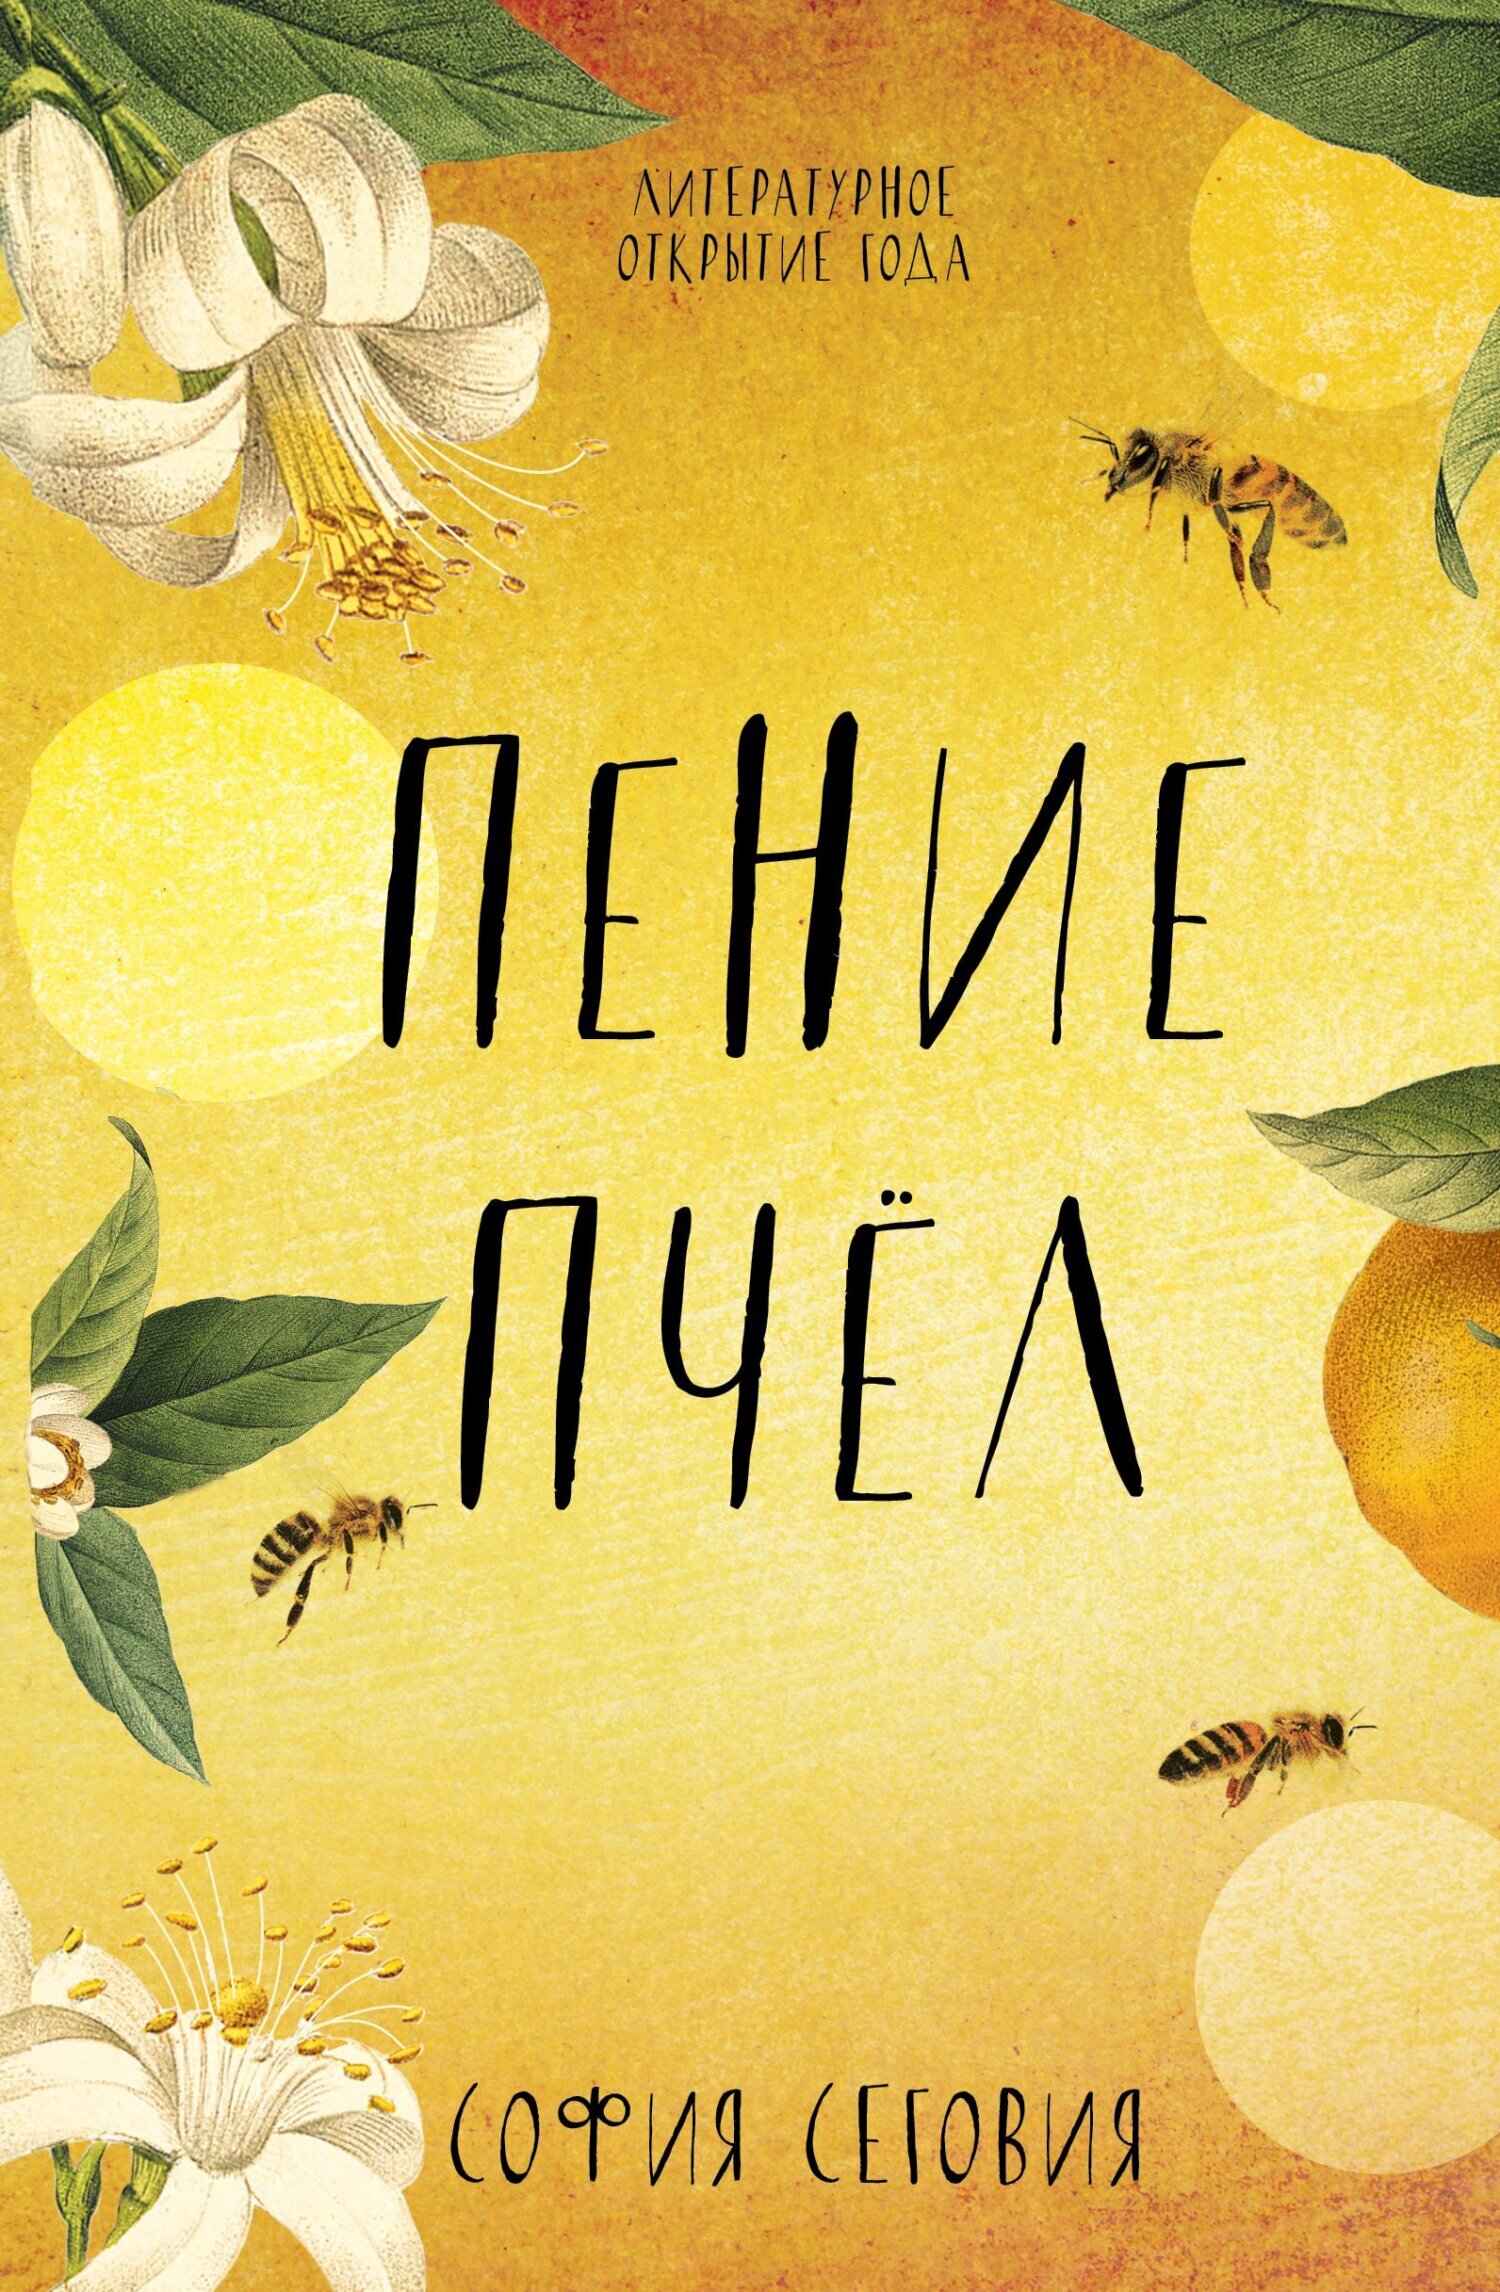 Пение пчел – Надежда Беленькая, София Сеговия